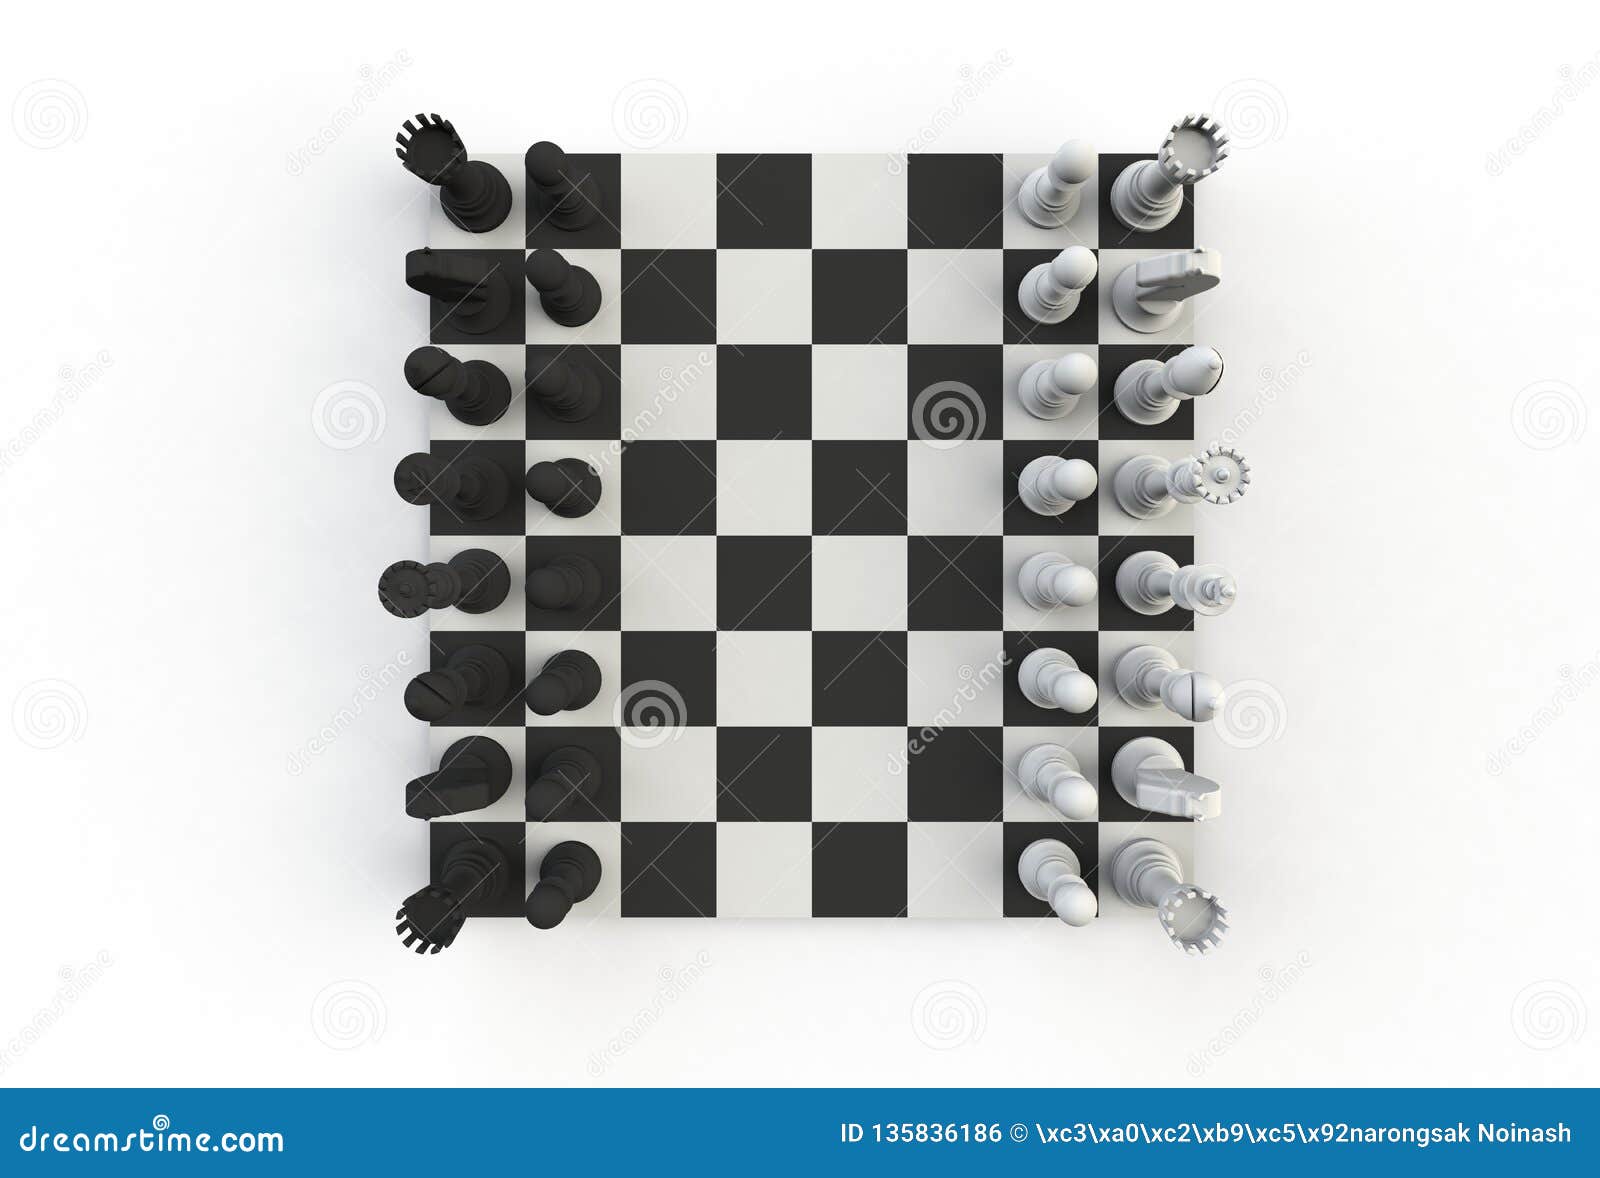 Фигурка шахматная вид сверху